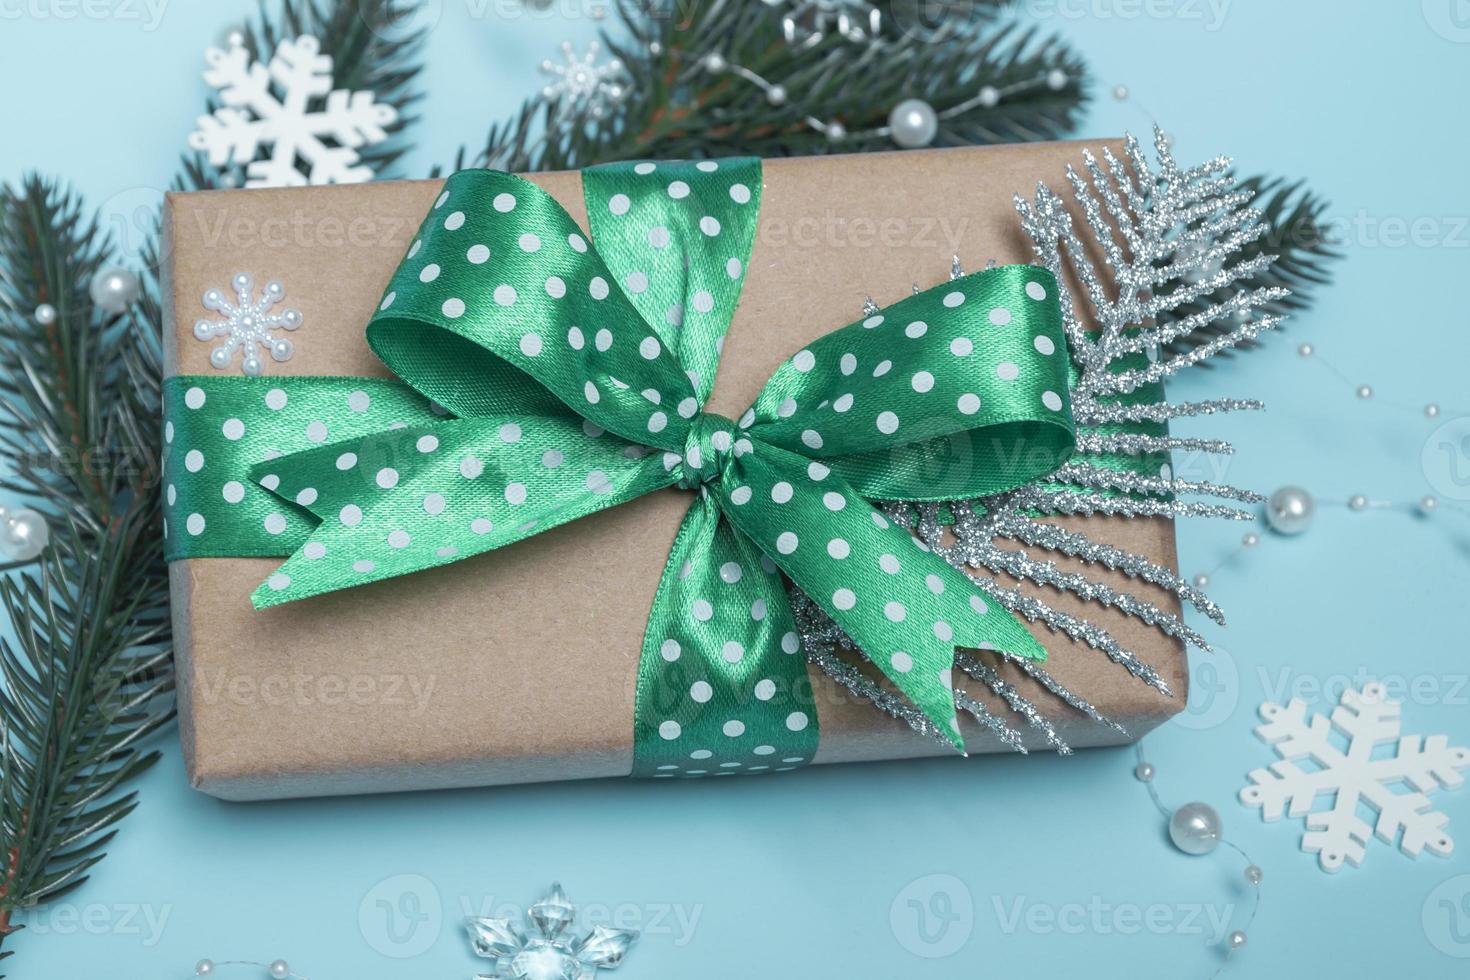 vrolijk kerstfeest en een gelukkig nieuwjaar. cadeau met een groen lint met stippen en ornamenten op een blauwe achtergrond. kerstkaart close-up foto